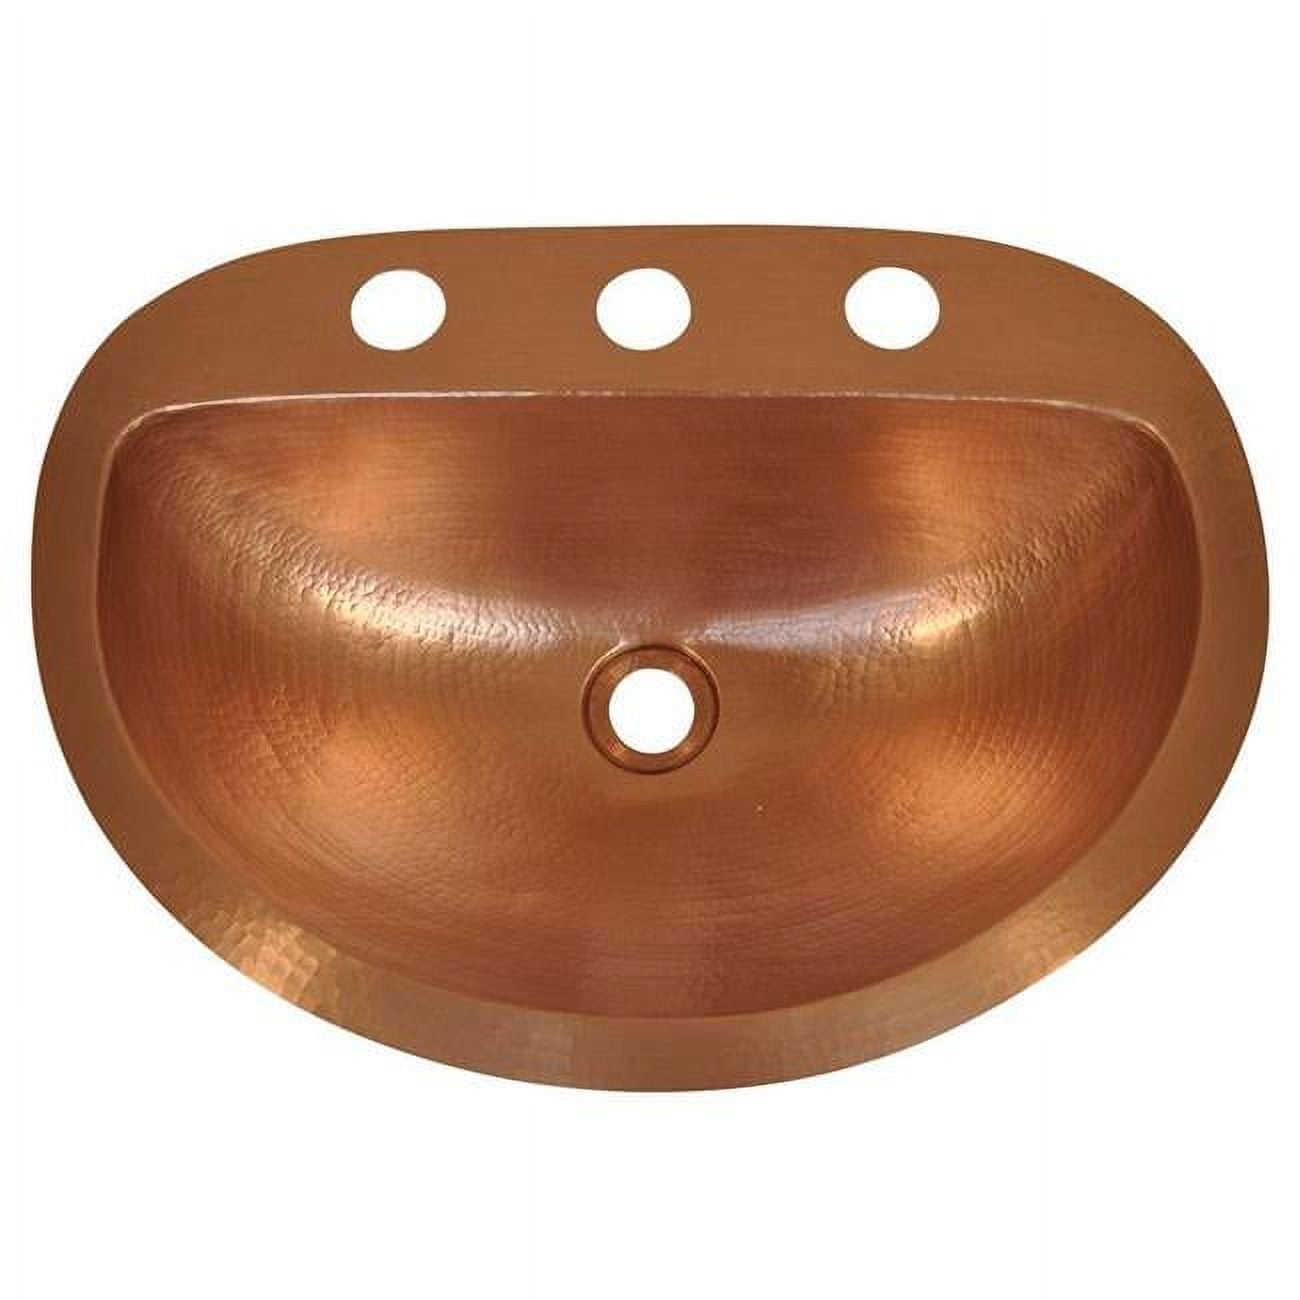 Cos-dg-19-br Copper Oval Vessel Sink, Bright - Durango Design - 6 X 17 X 19 In.